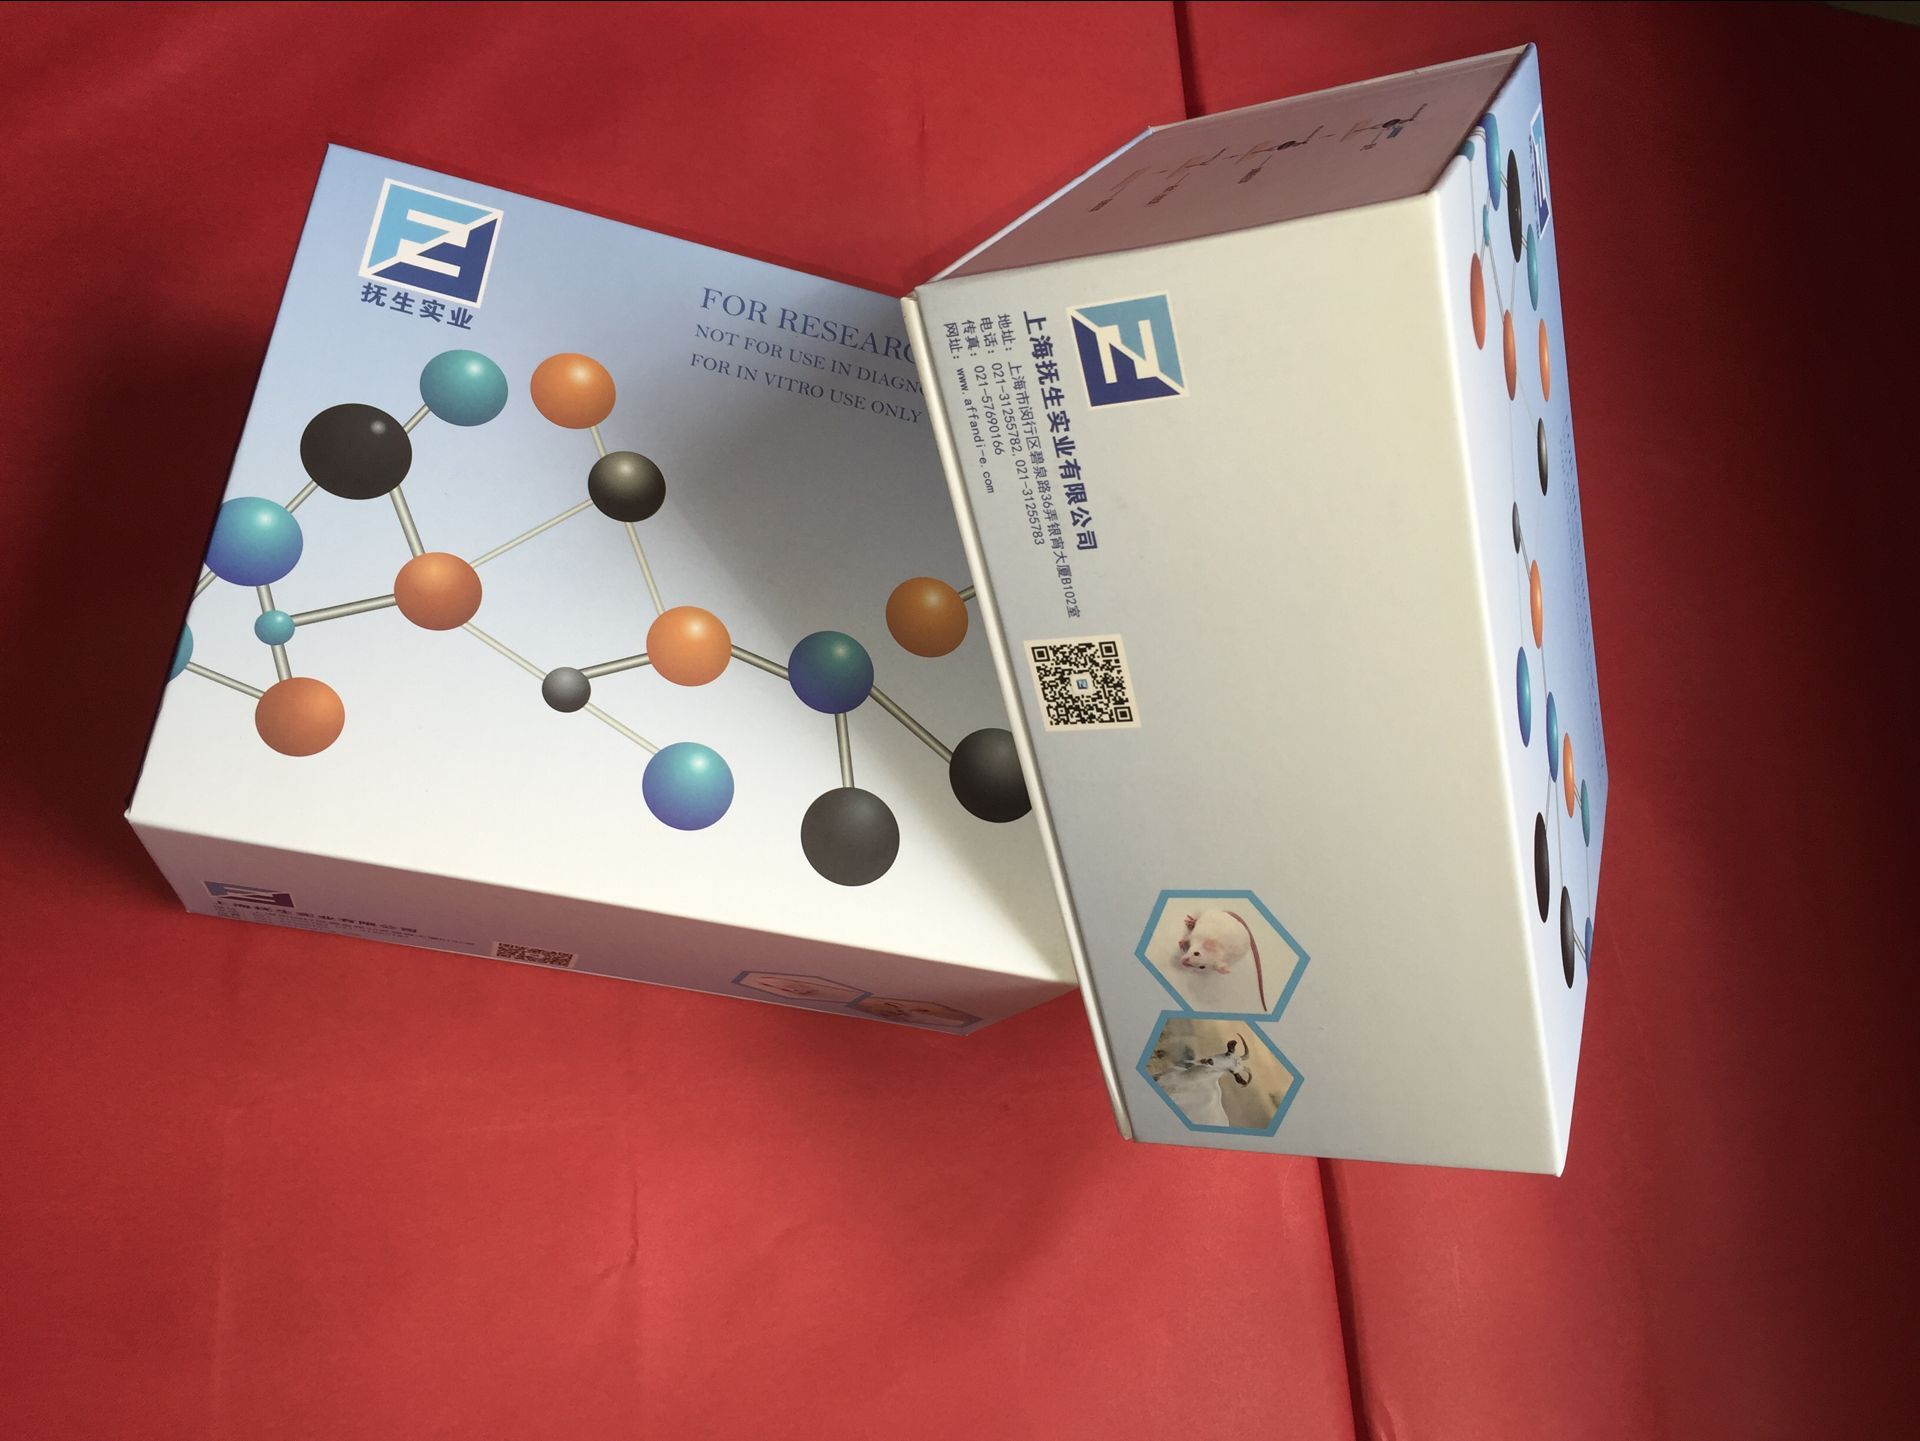 人脆性组氨酸三联体(FHIT)elisa检测试剂盒图片